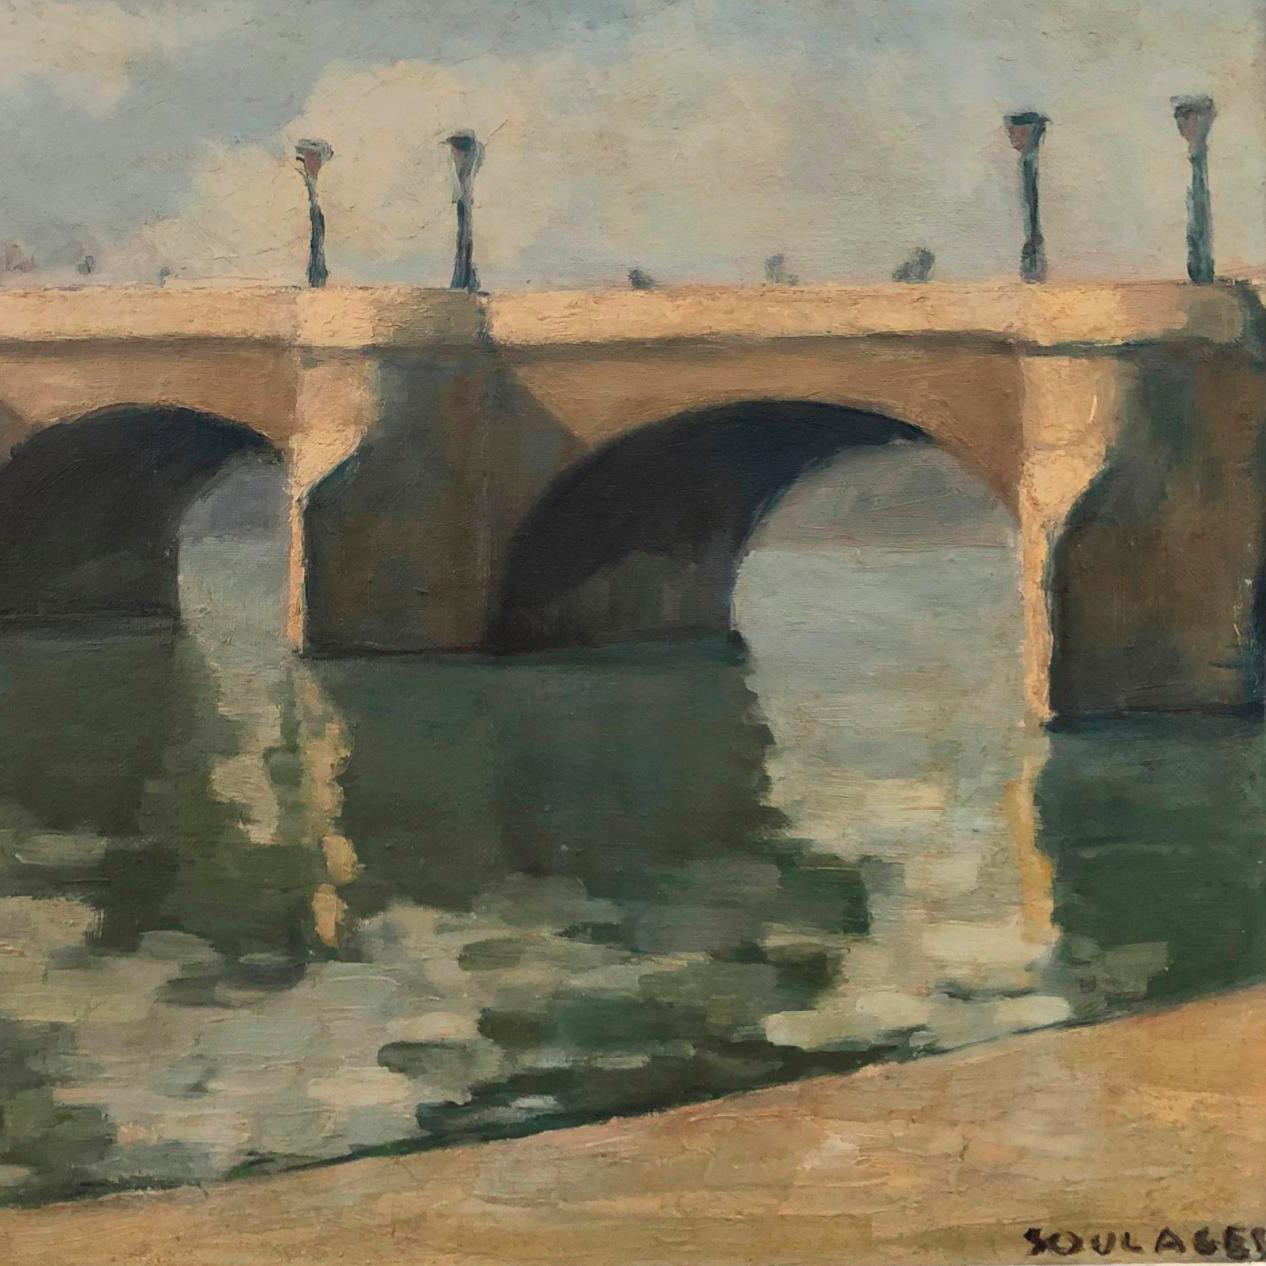 pont neuf painting